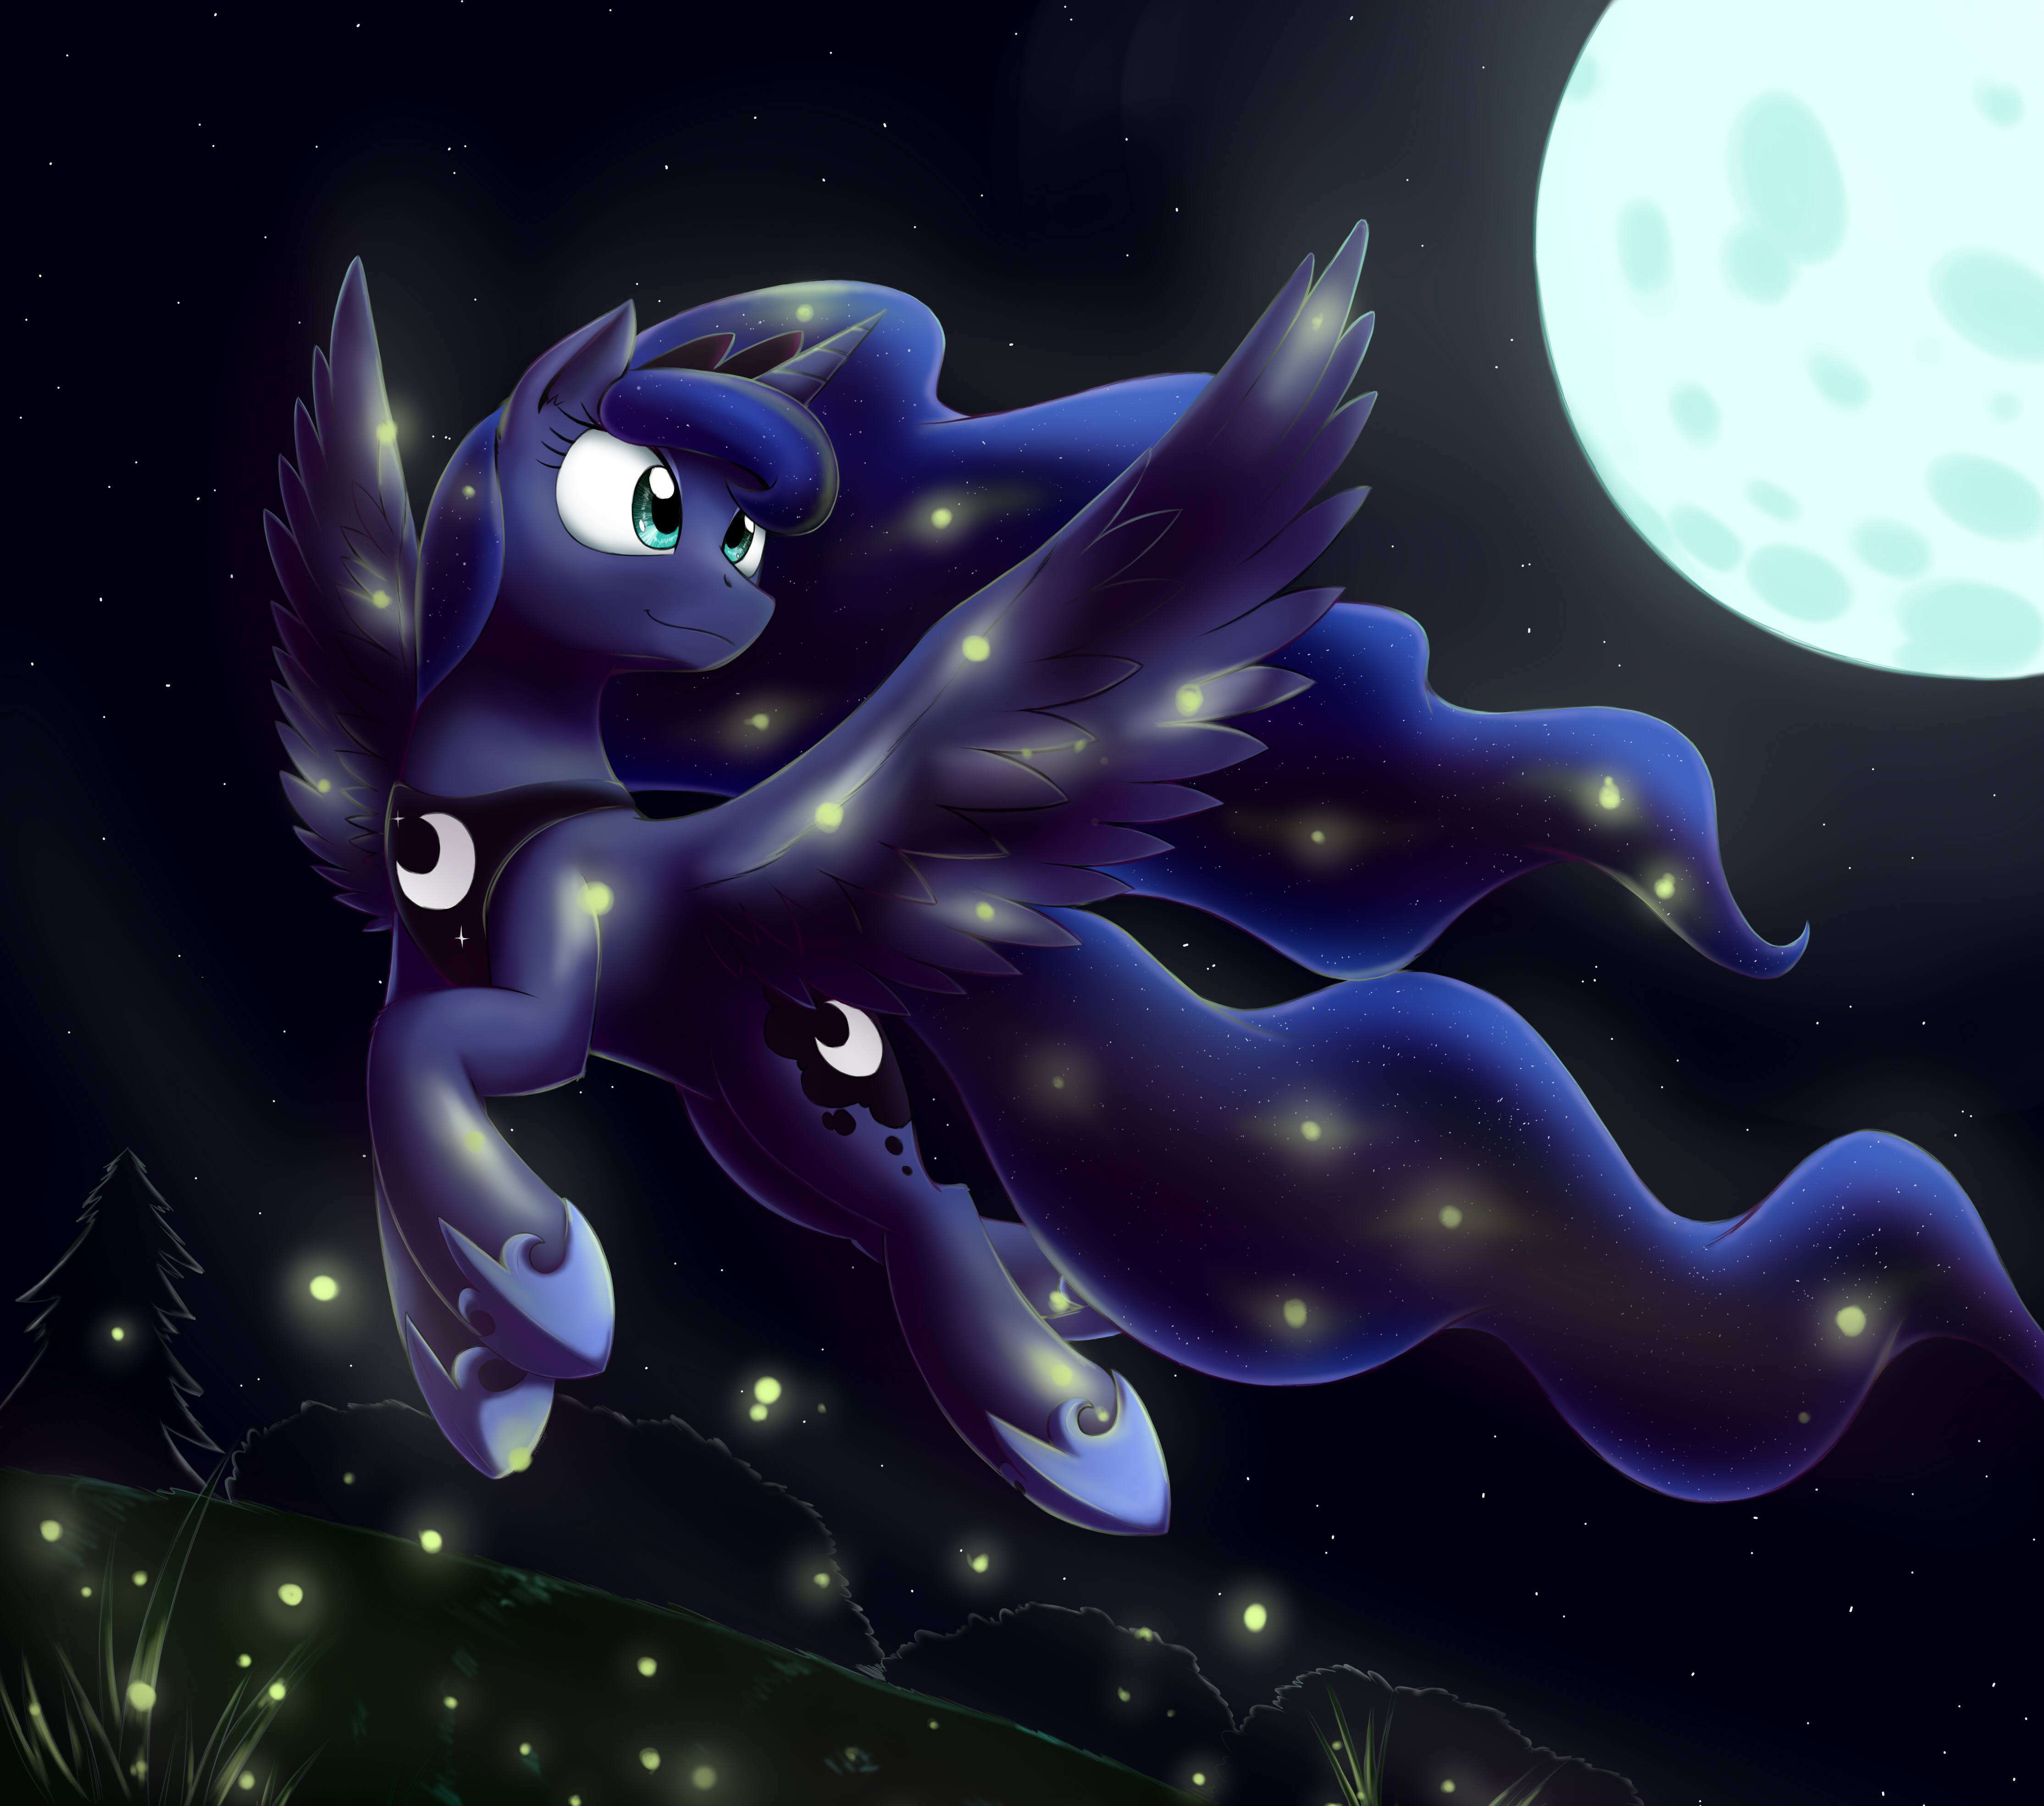 Luna's fireflies by otakuap